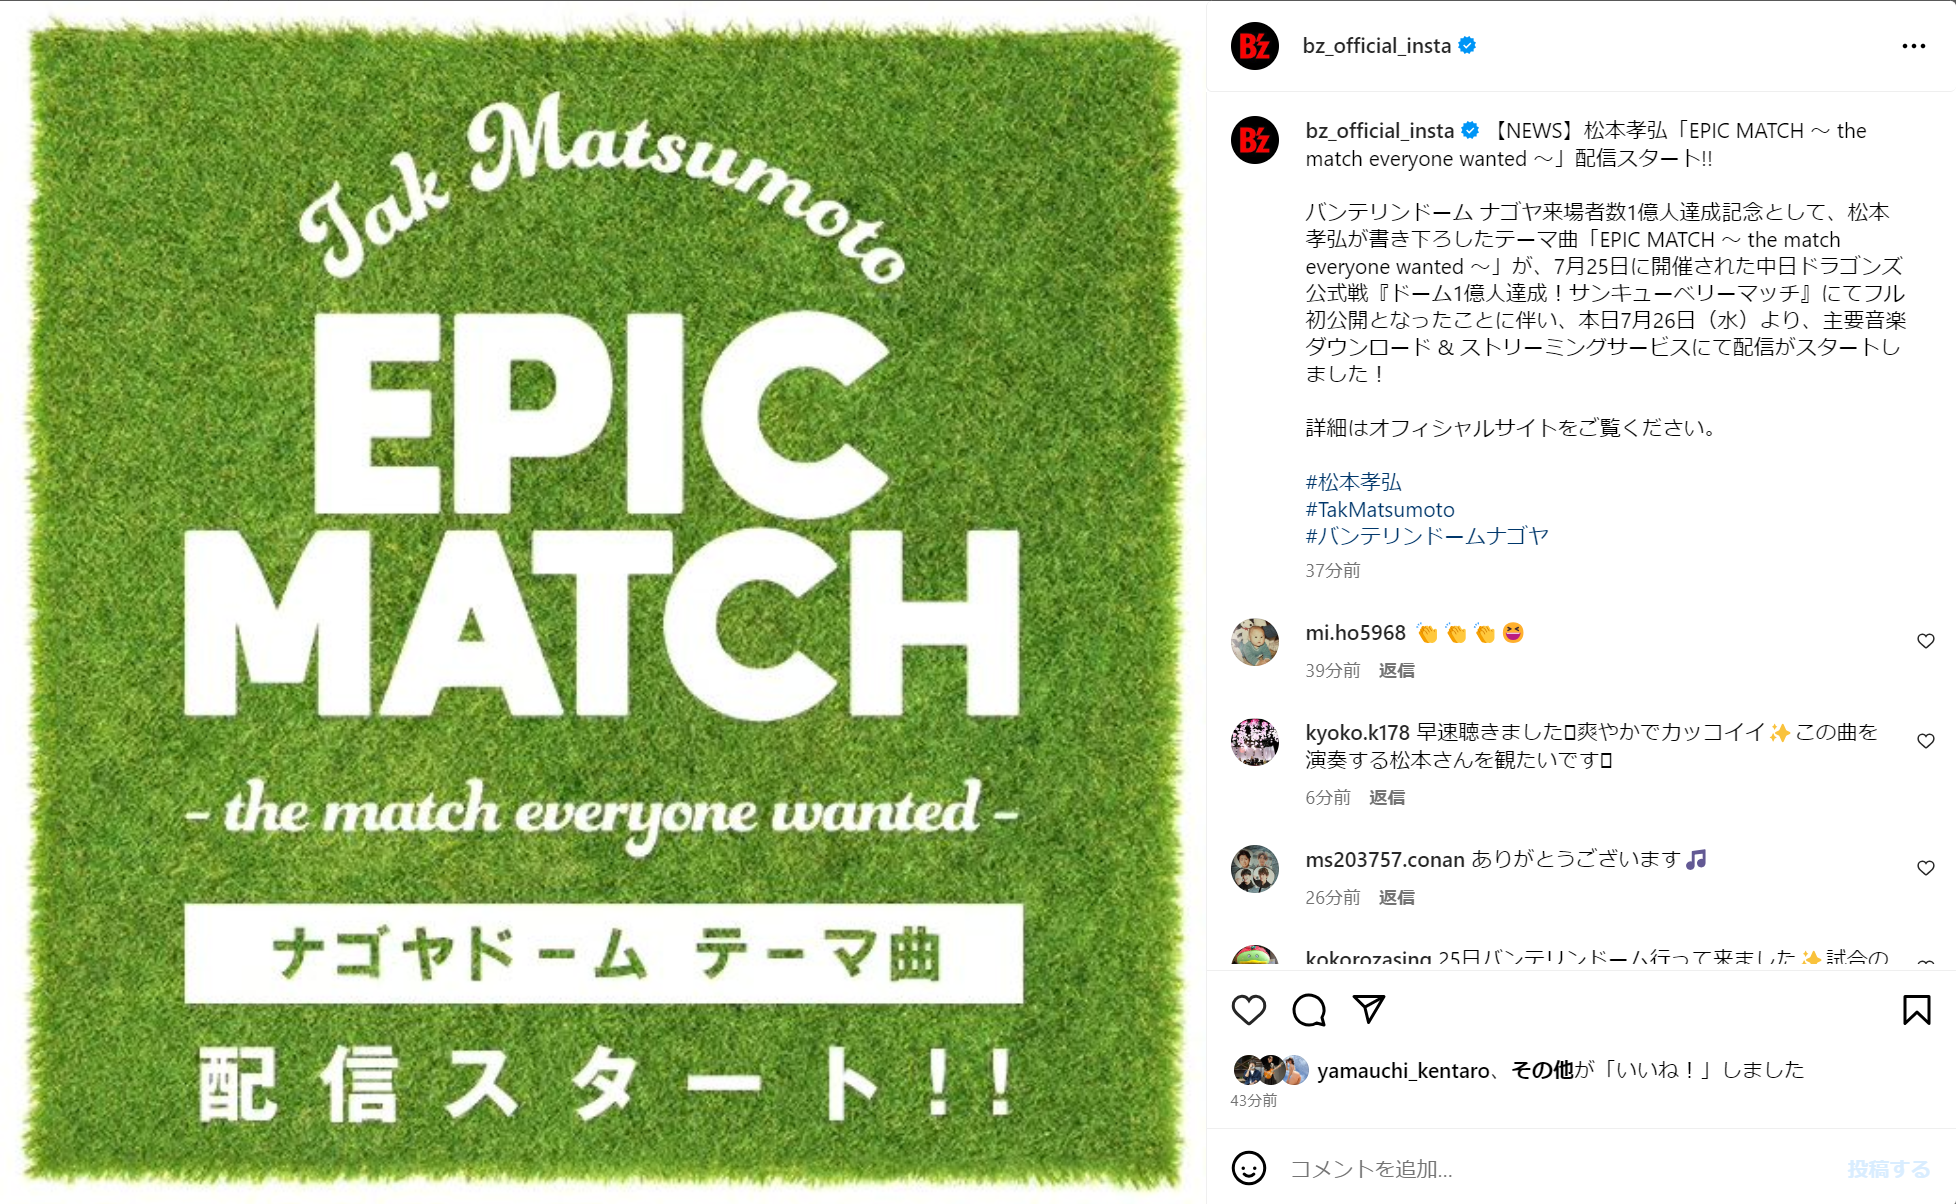 松本孝弘「EPIC MATCH ～ the match everyone wanted ～」のリリースを告知するB'z公式Instagramの投稿